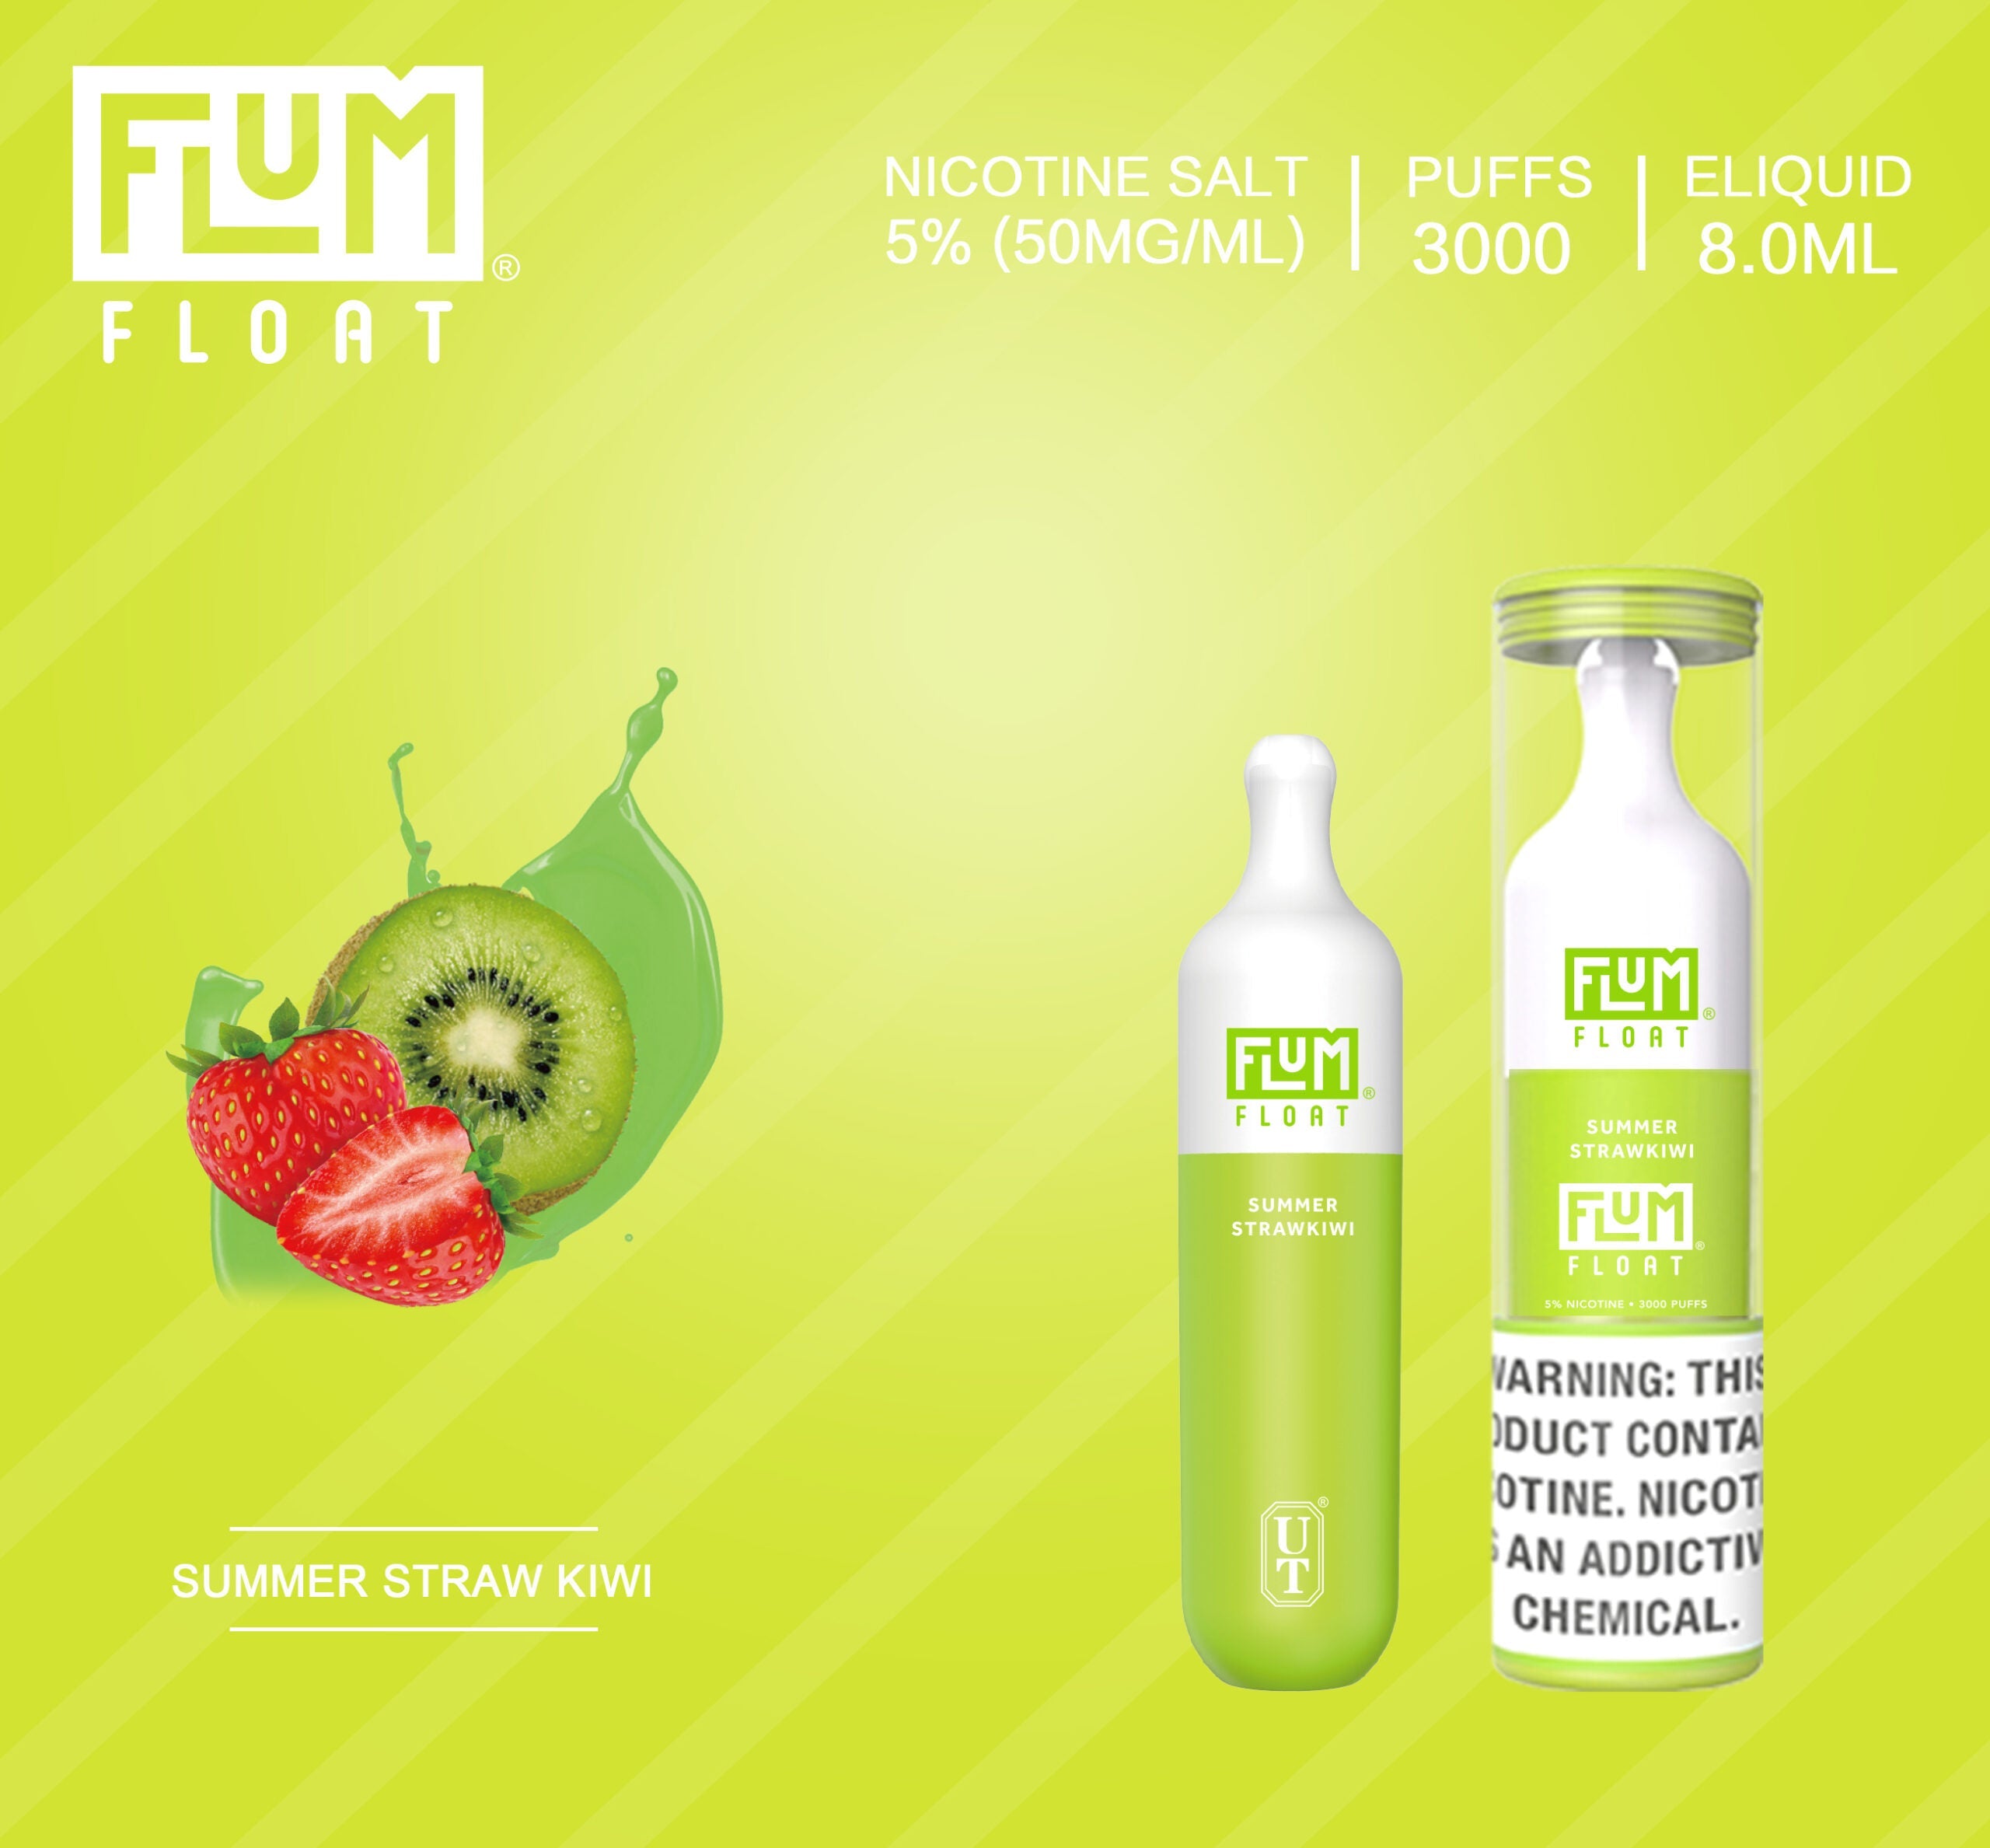 Flum float best flavor